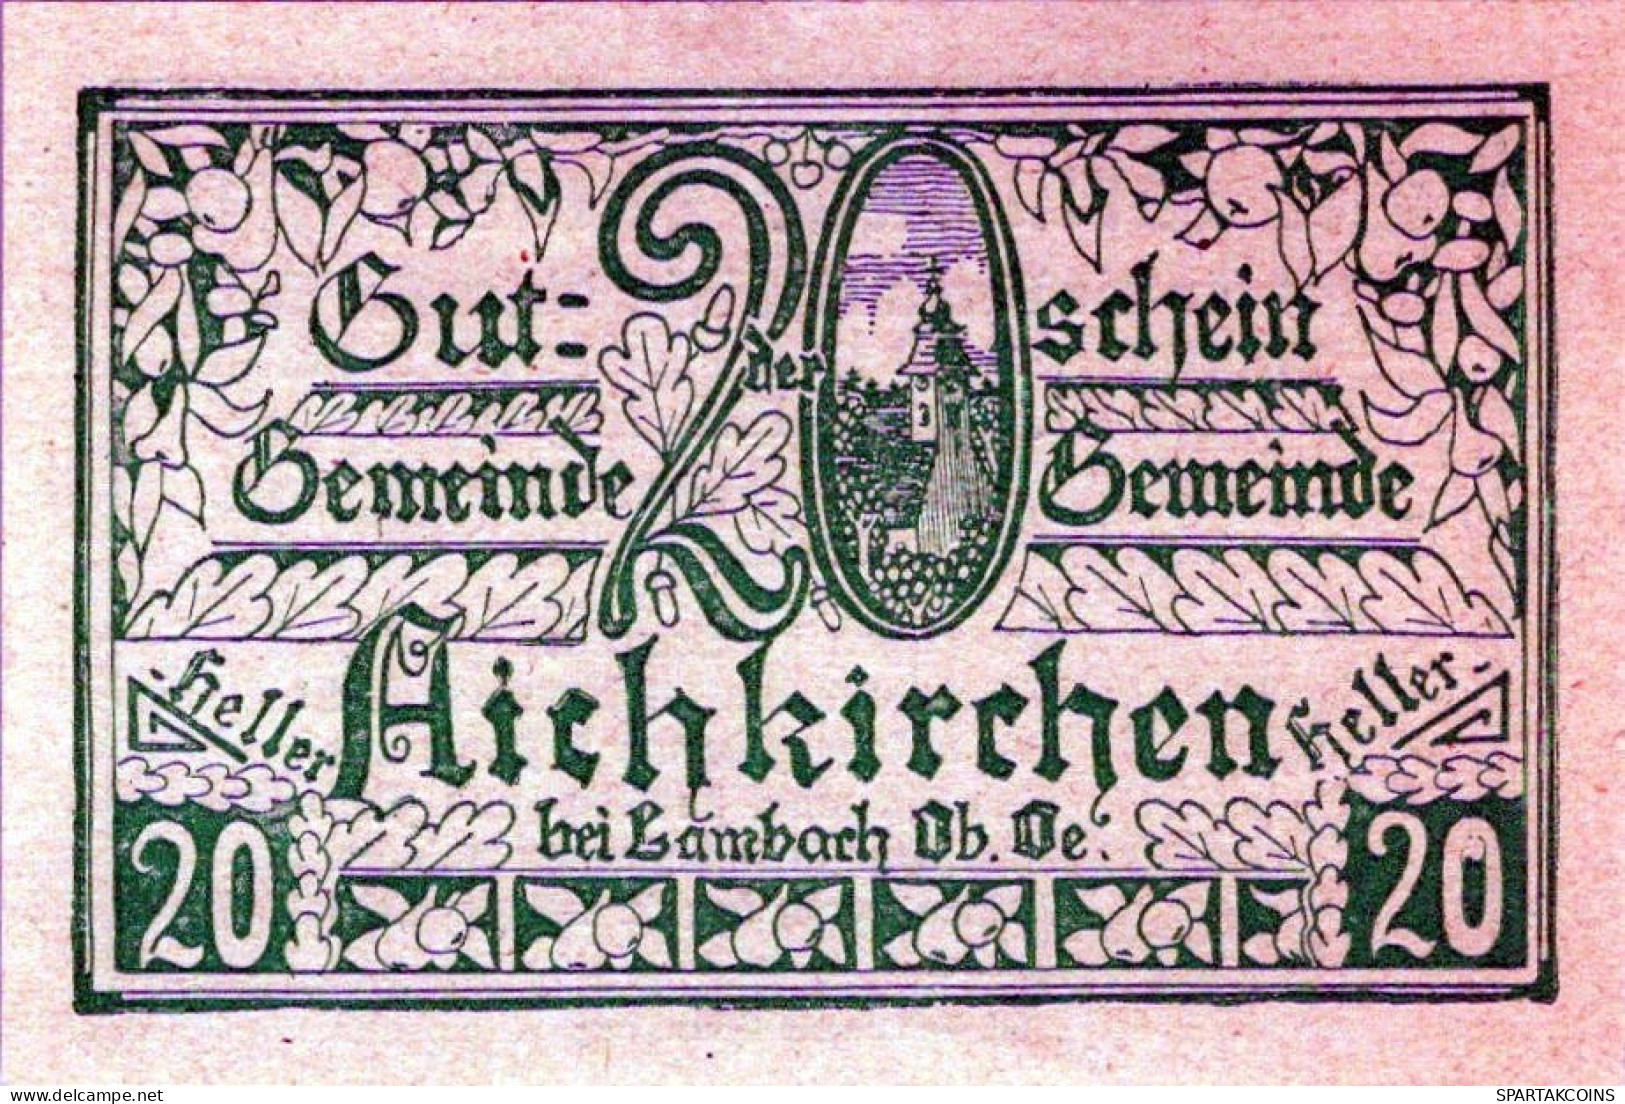 20 HELLER 1921 Stadt AICHKIRCHEN Oberösterreich Österreich Notgeld #PE157 - [11] Emissioni Locali